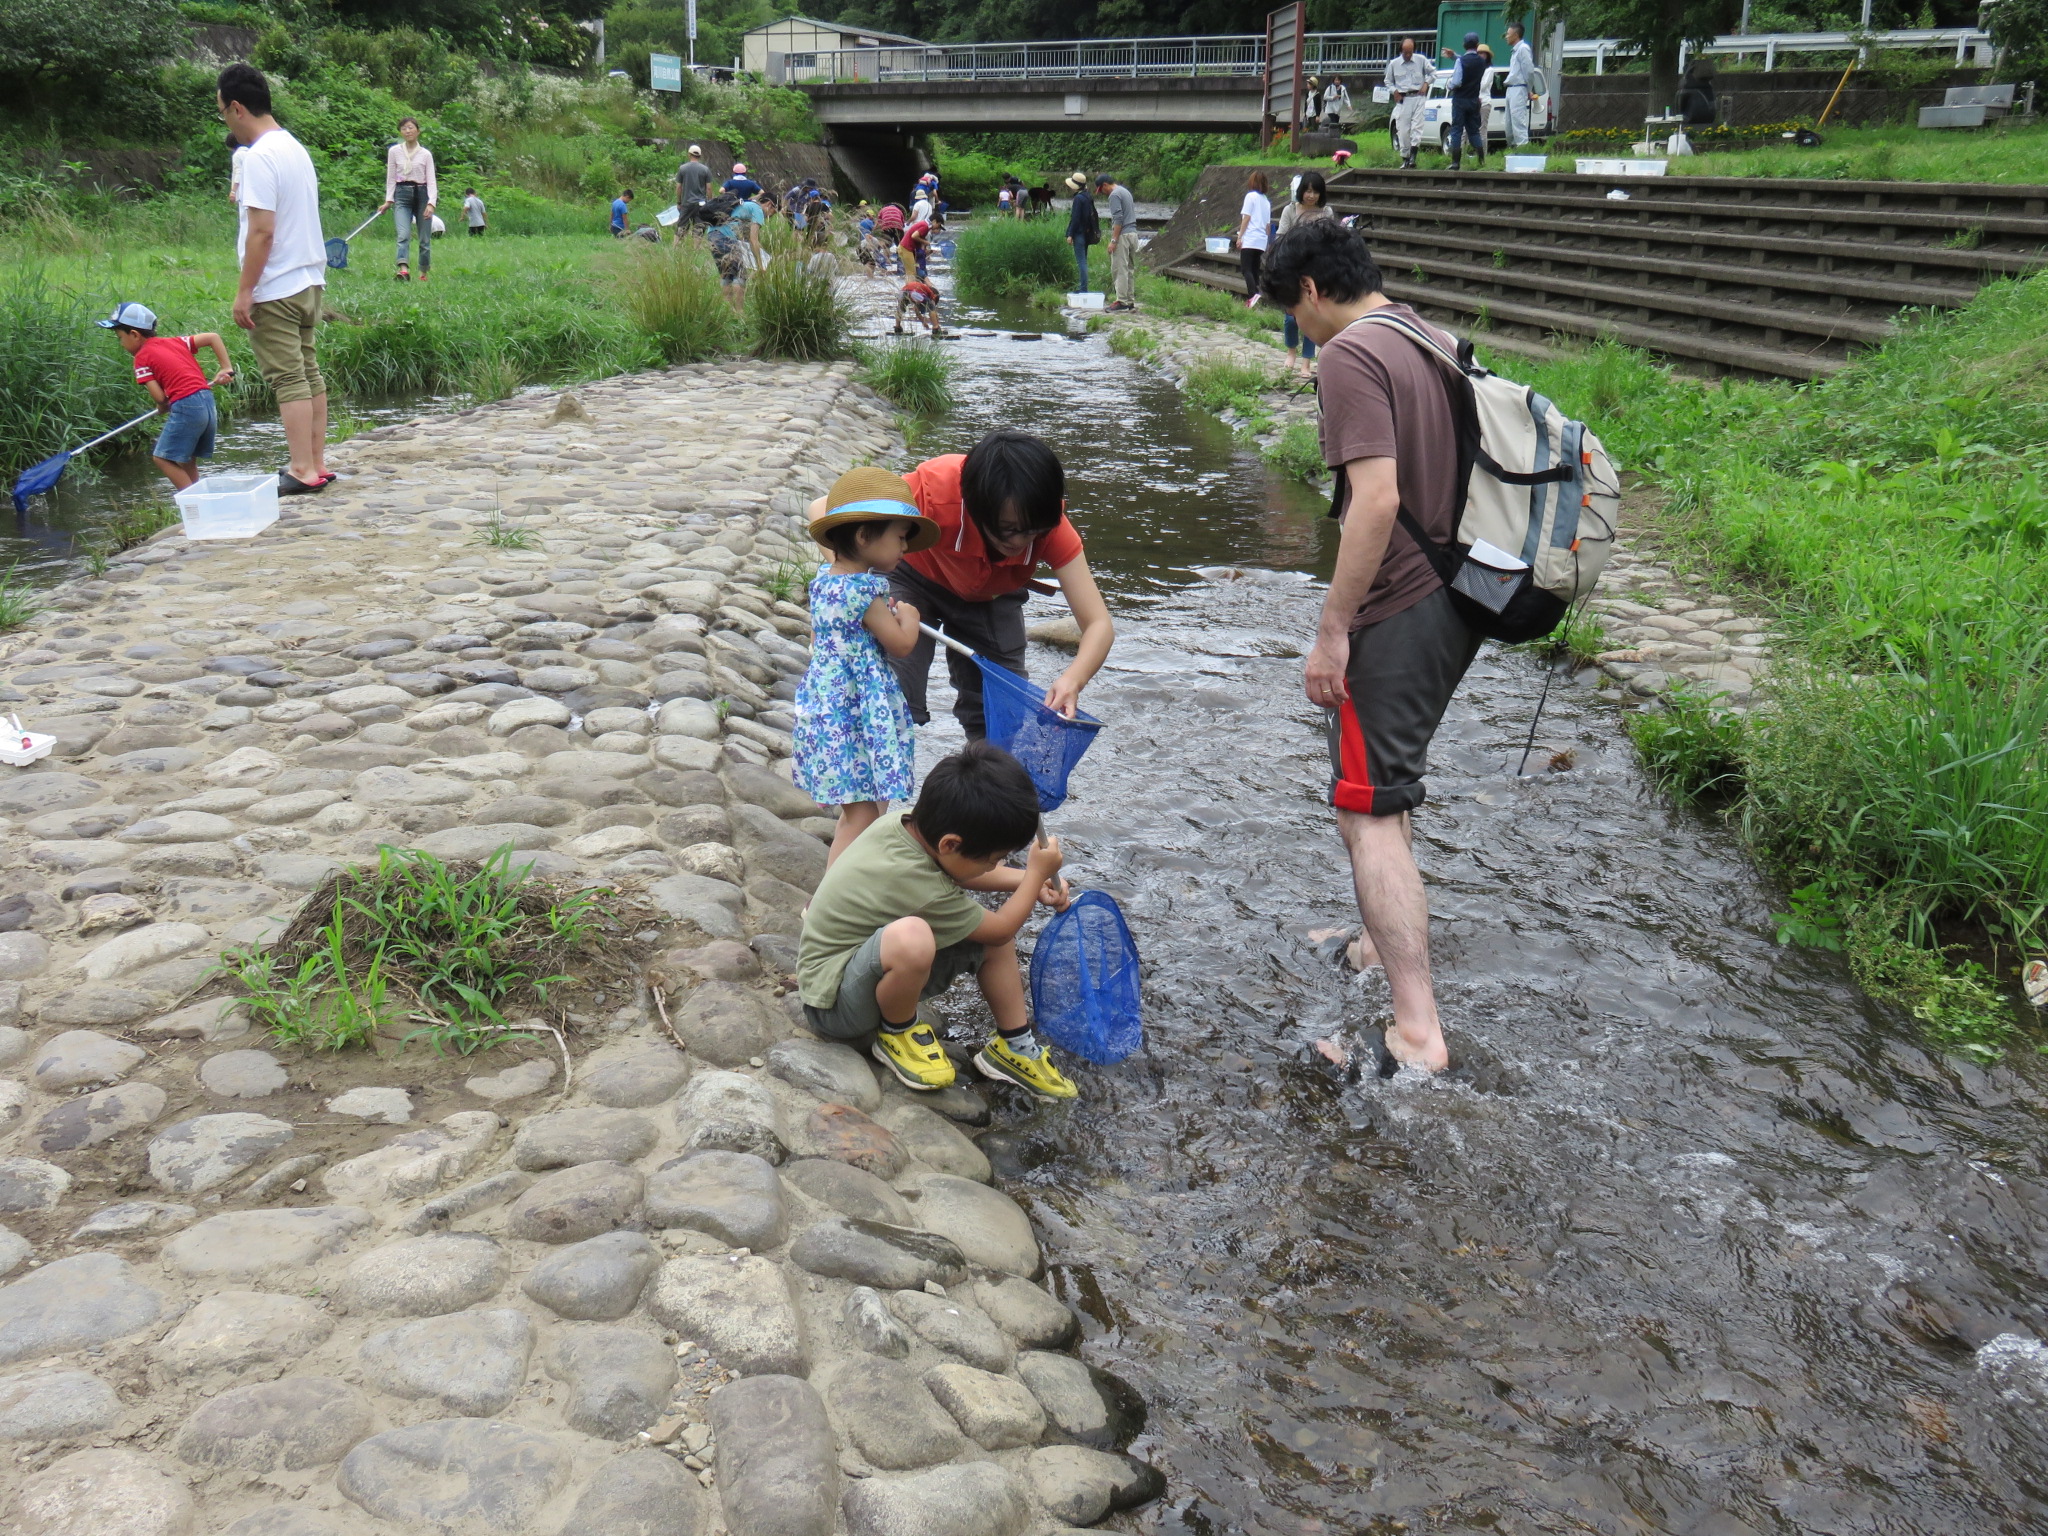 大人も子どももみんな楽しそうに、川の虫取りに一生懸命。